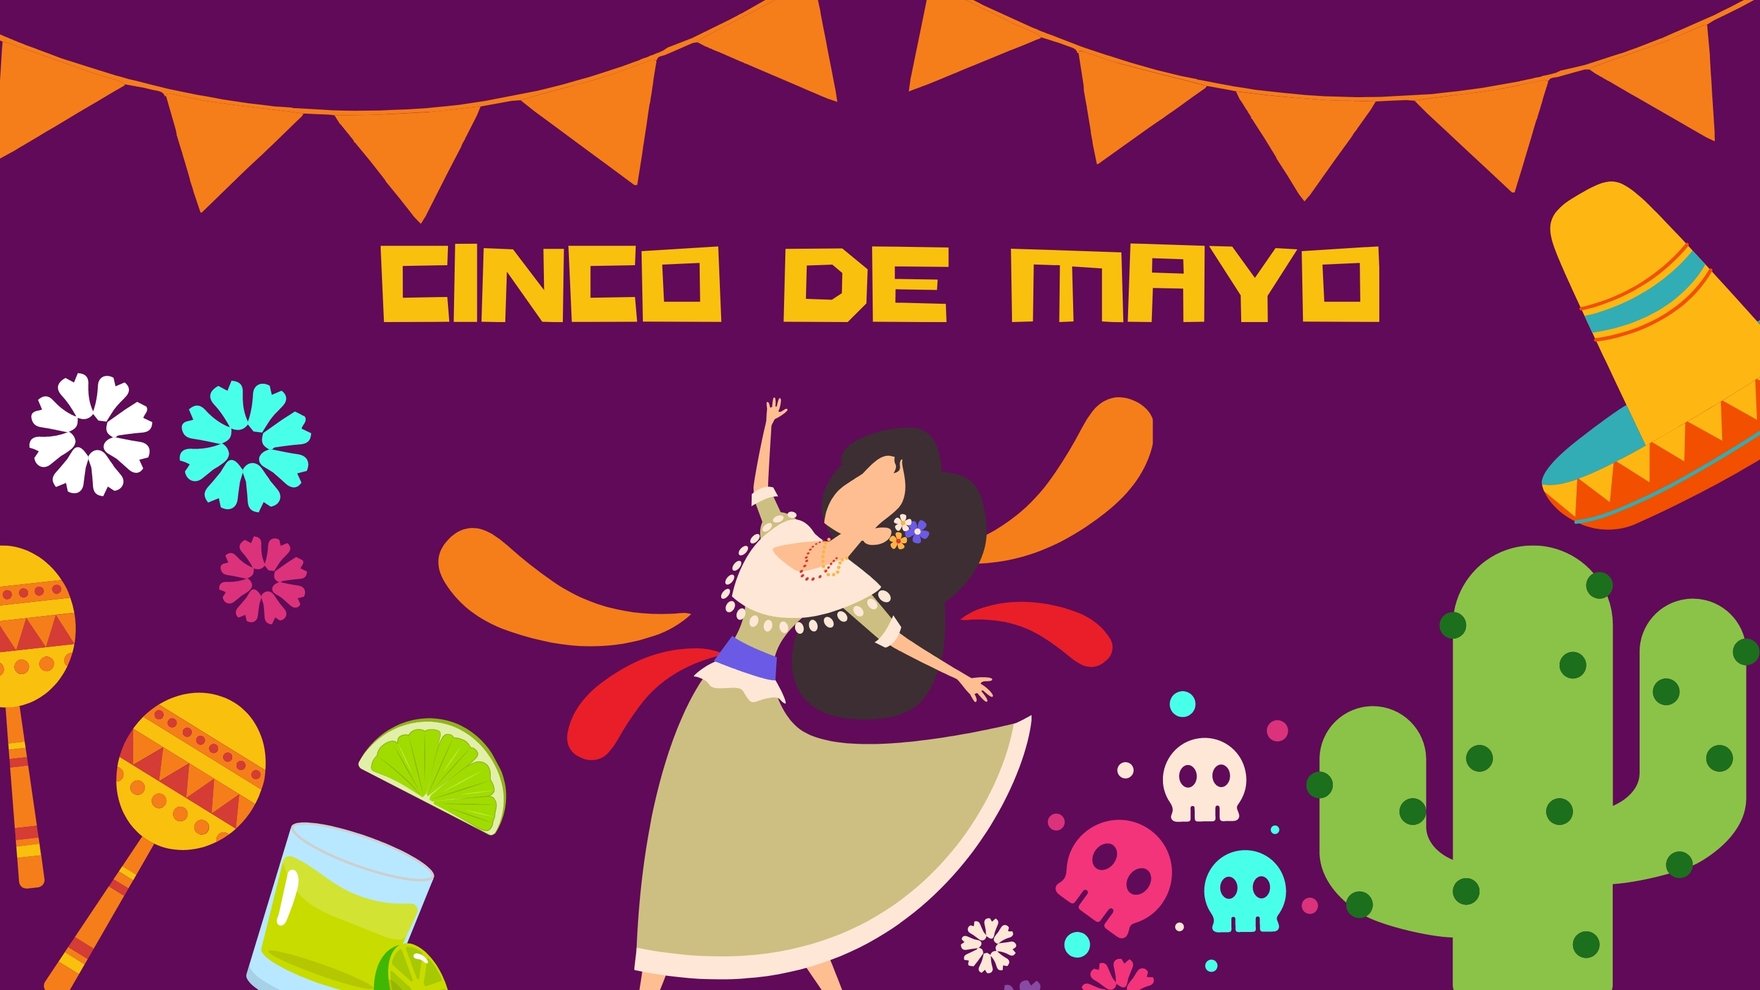 Free Cinco de Mayo Design Background in PDF, Illustrator, PSD, EPS, SVG, JPG, PNG